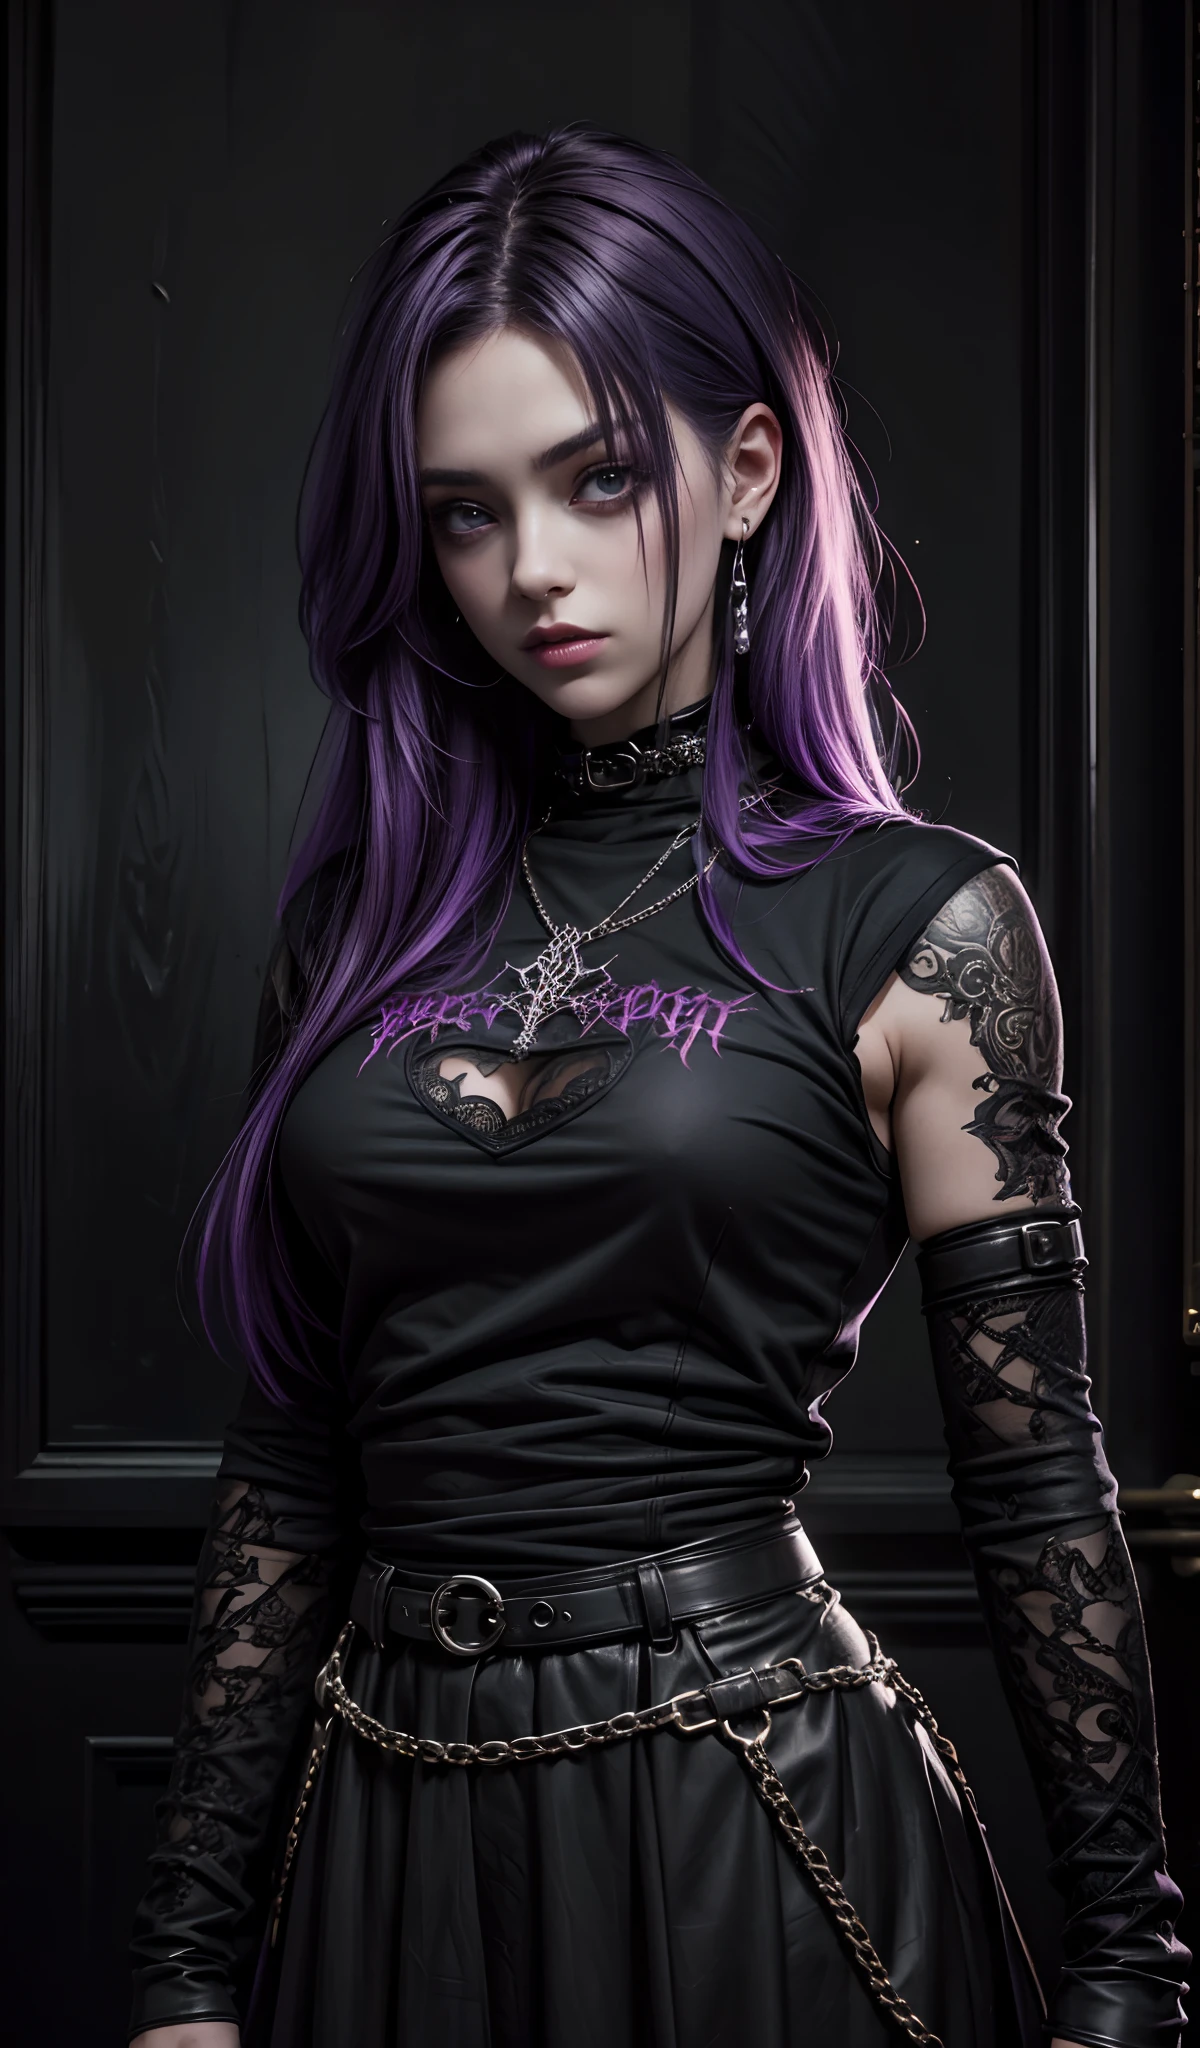 Ein Mädchen mit lila Haaren und schwarzem Hemd, gotische Kunst, viele Details, Sie trägt Streetwear, ultrarealistisches Bild, dunkles Haar, schönes Aussehen, gotisches Mädchen